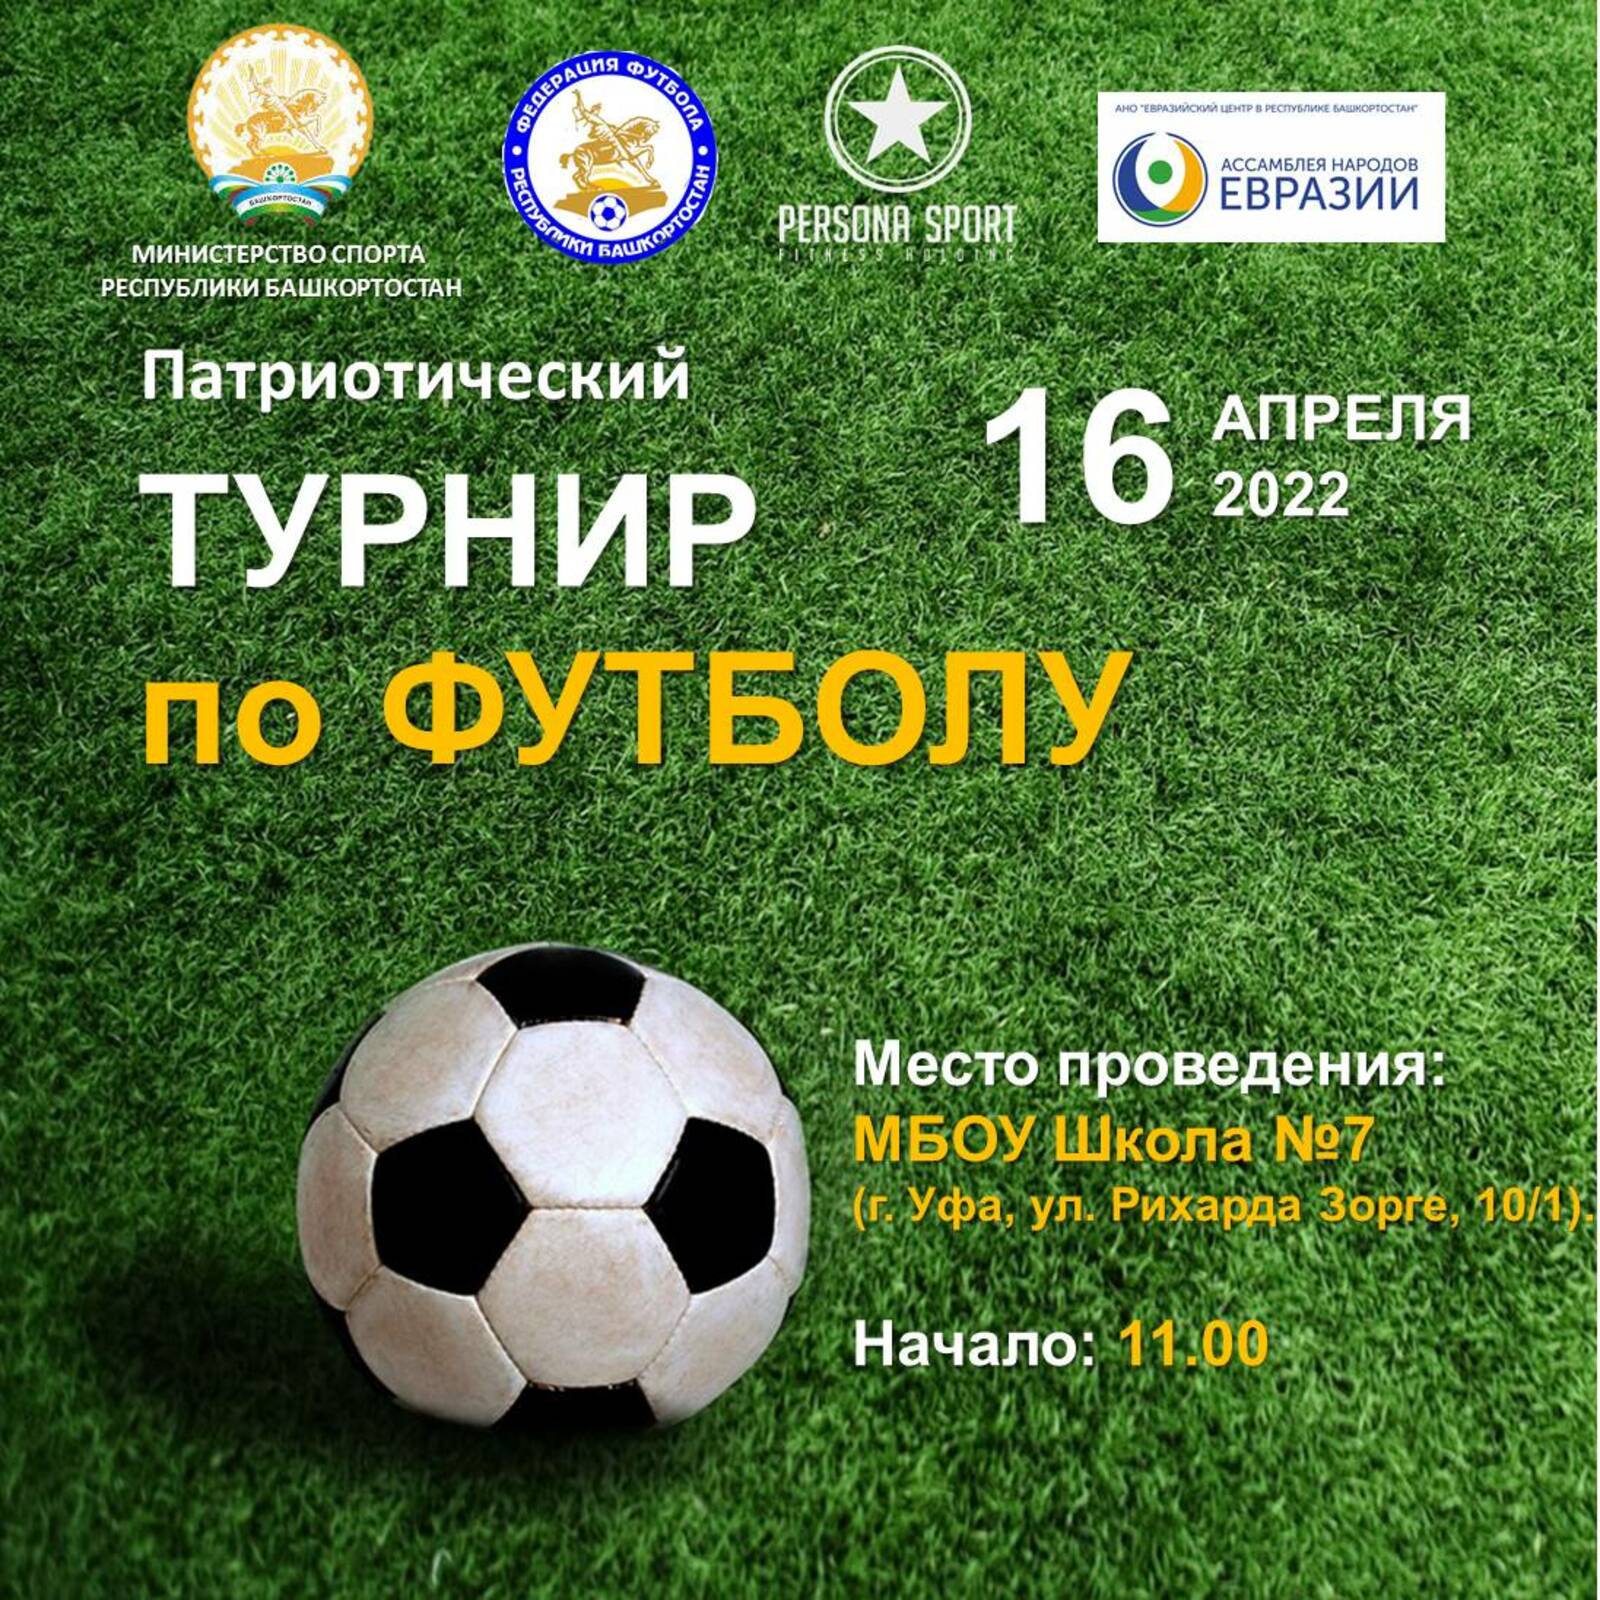 В Башкортостане пройдет патриотический турнир по футболу, приуроченный ко Дню Победы